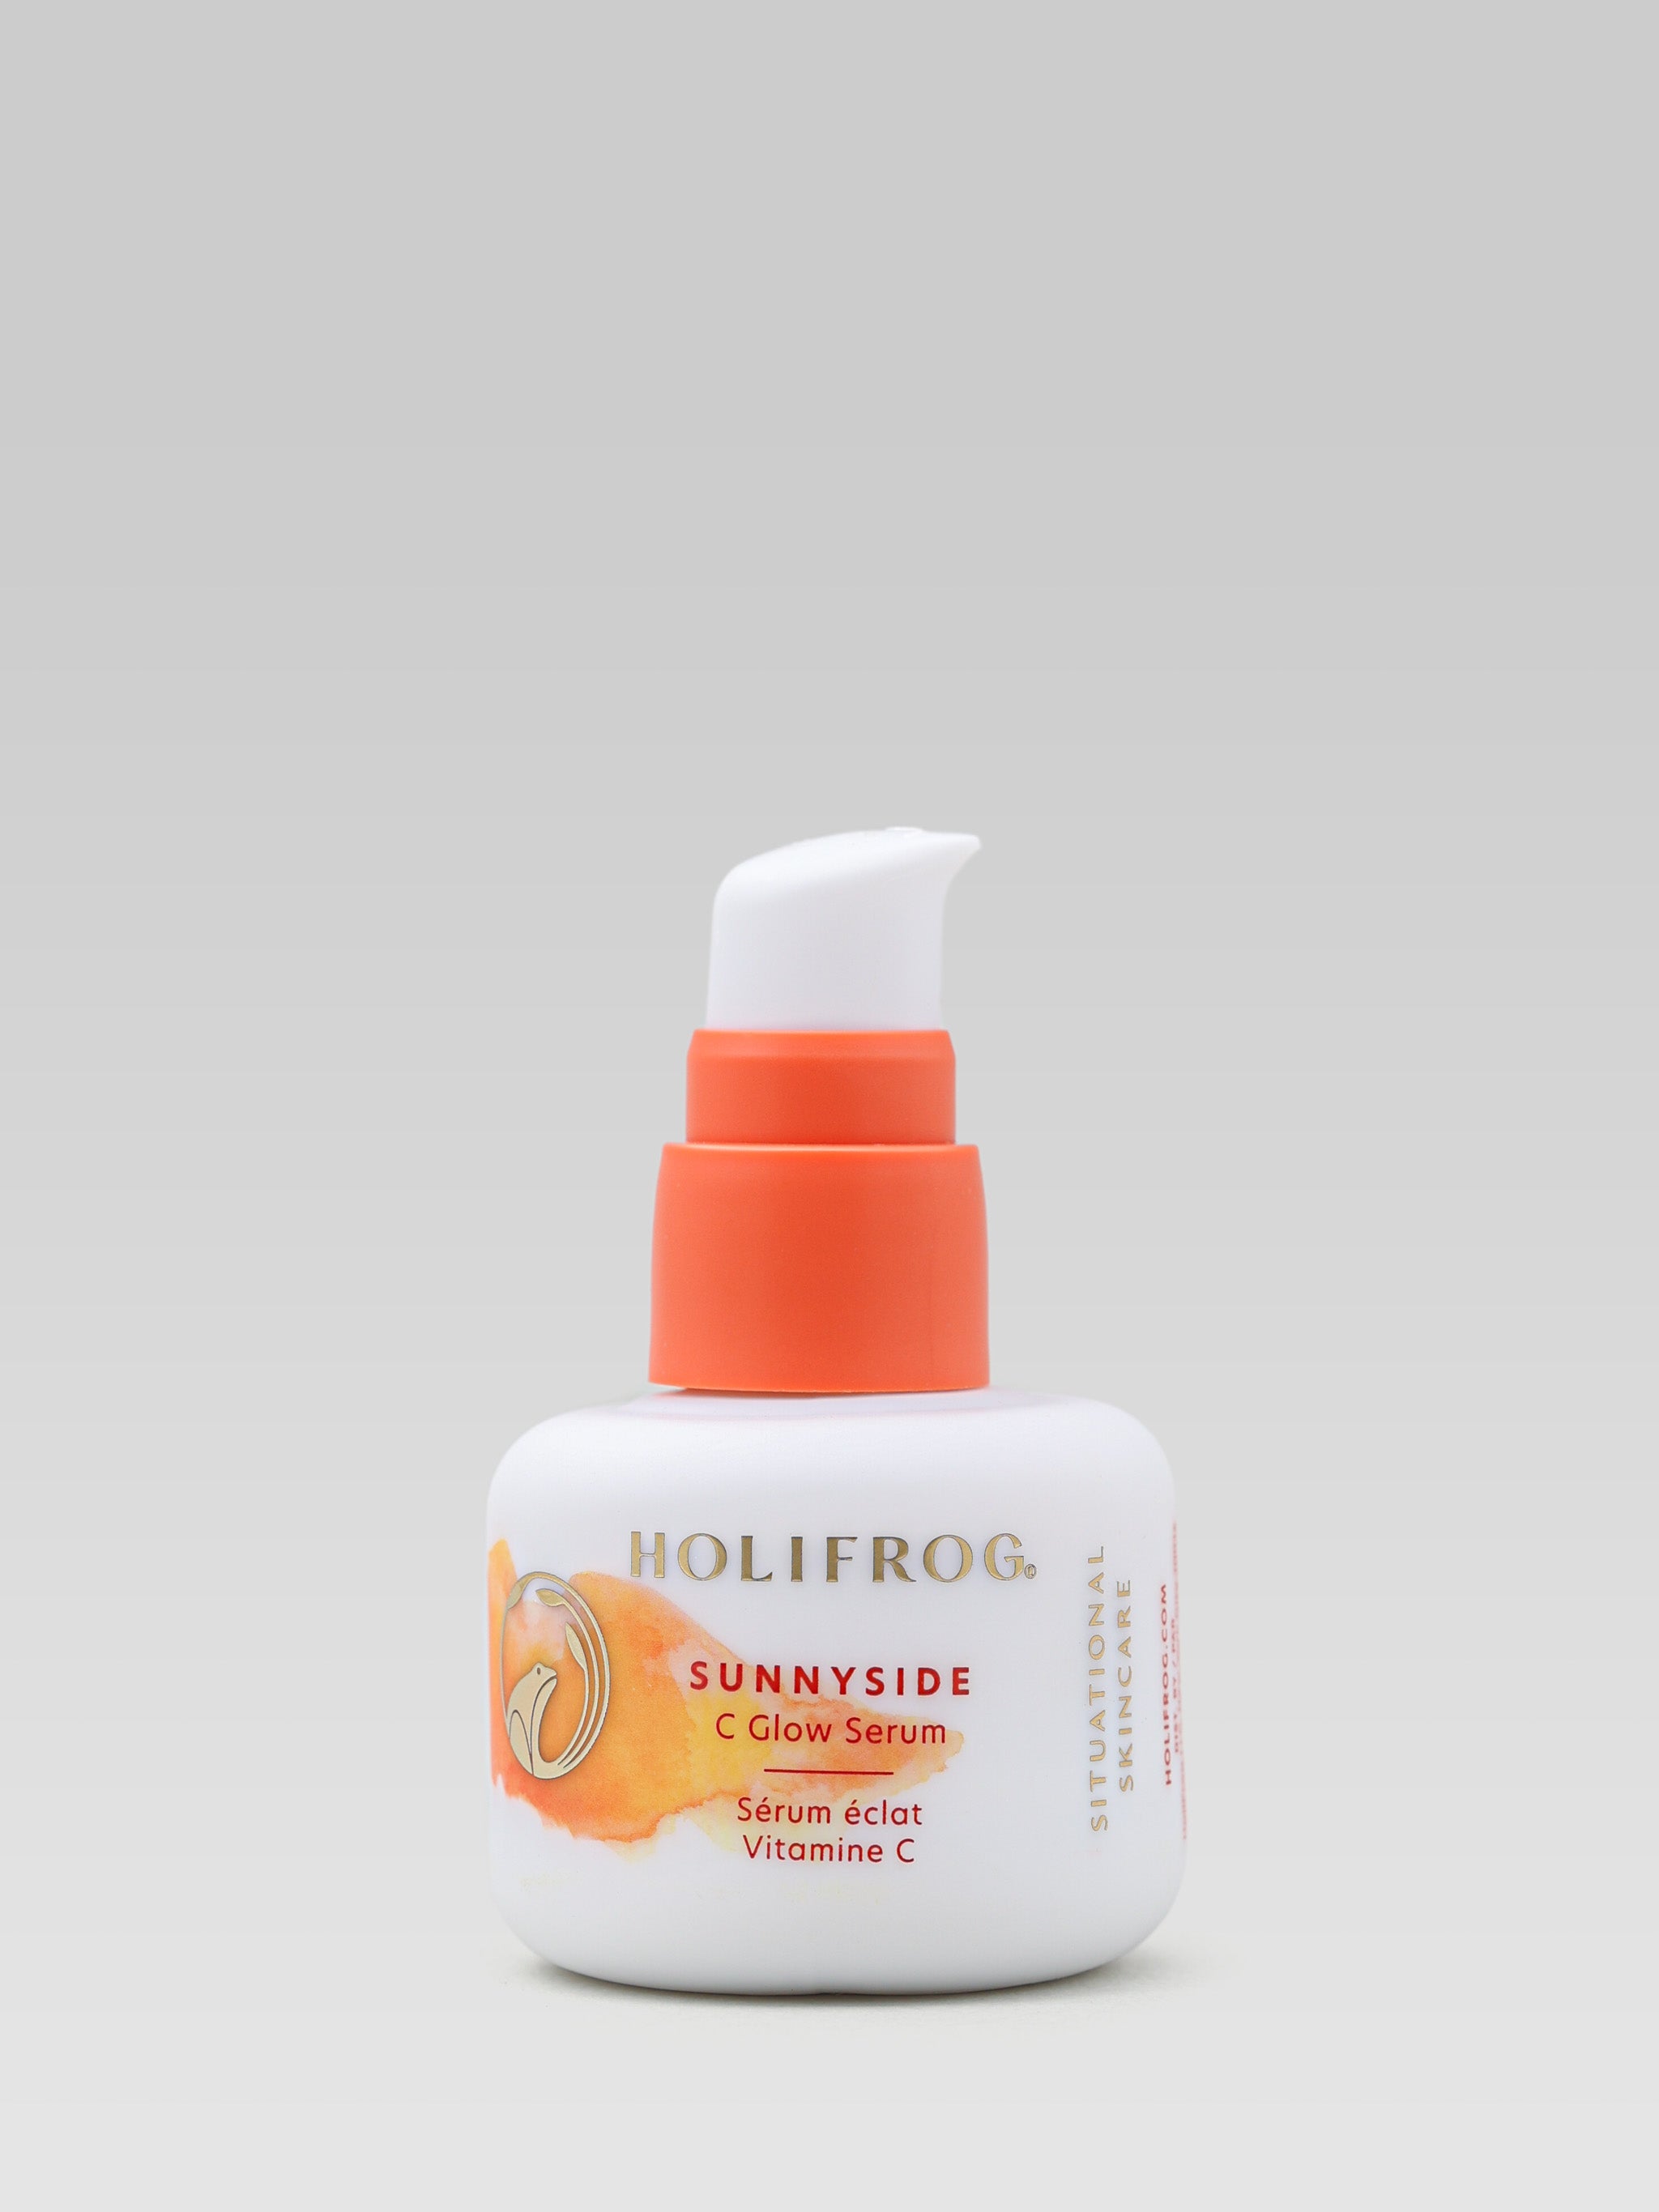 HOLIFROG Sunnyside C Glow Serum product shot 